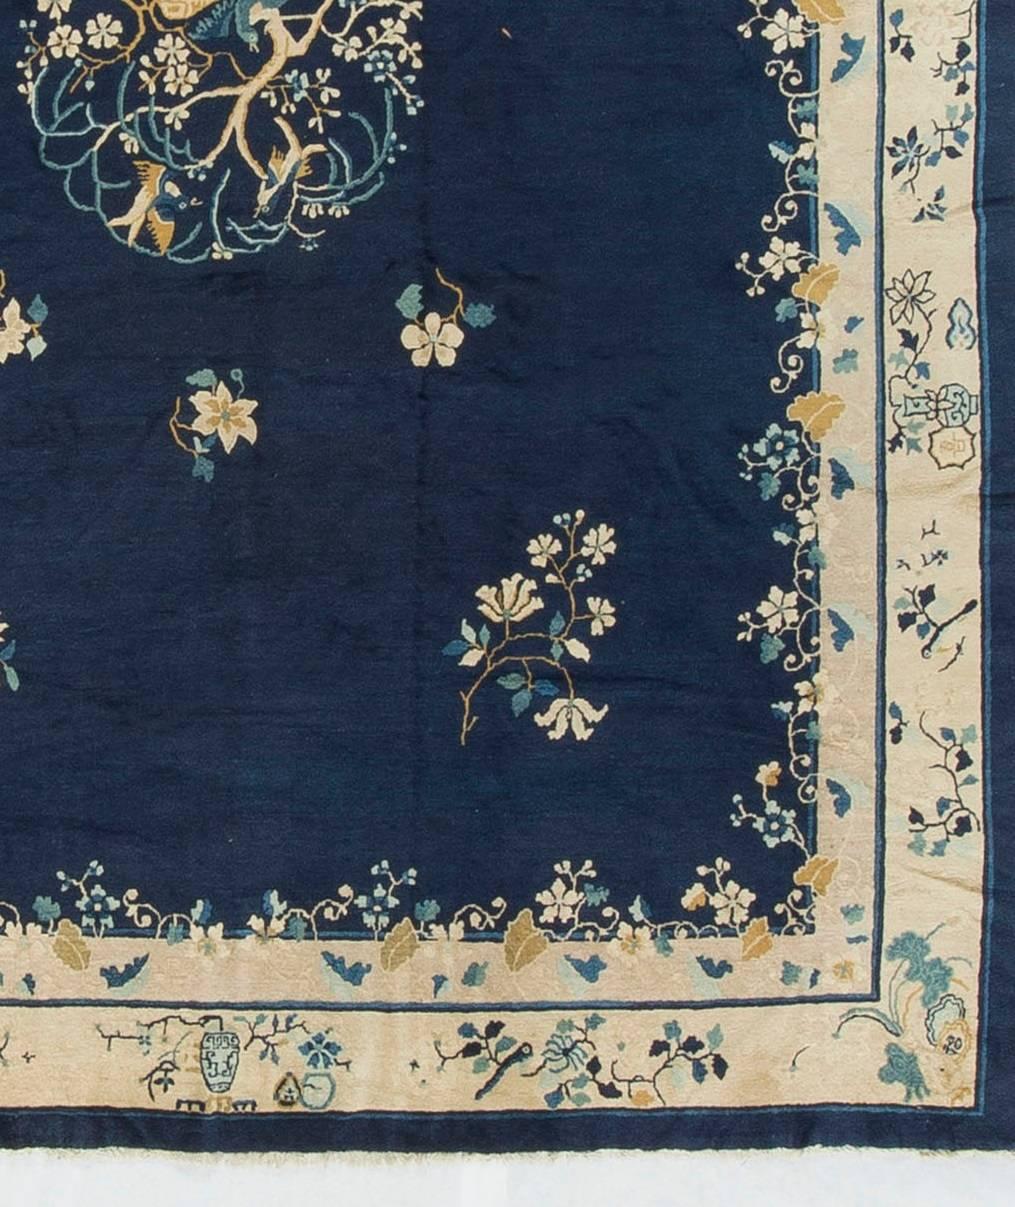 Le tissage à Pékin a commencé vers 1900, lors de la renaissance de la fabrication de tapis chinois, lorsque les autres régions de tissage, comme le Ningxia, se sont déplacées vers la capitale. Les tapis pékinois sont généralement minimalistes, avec